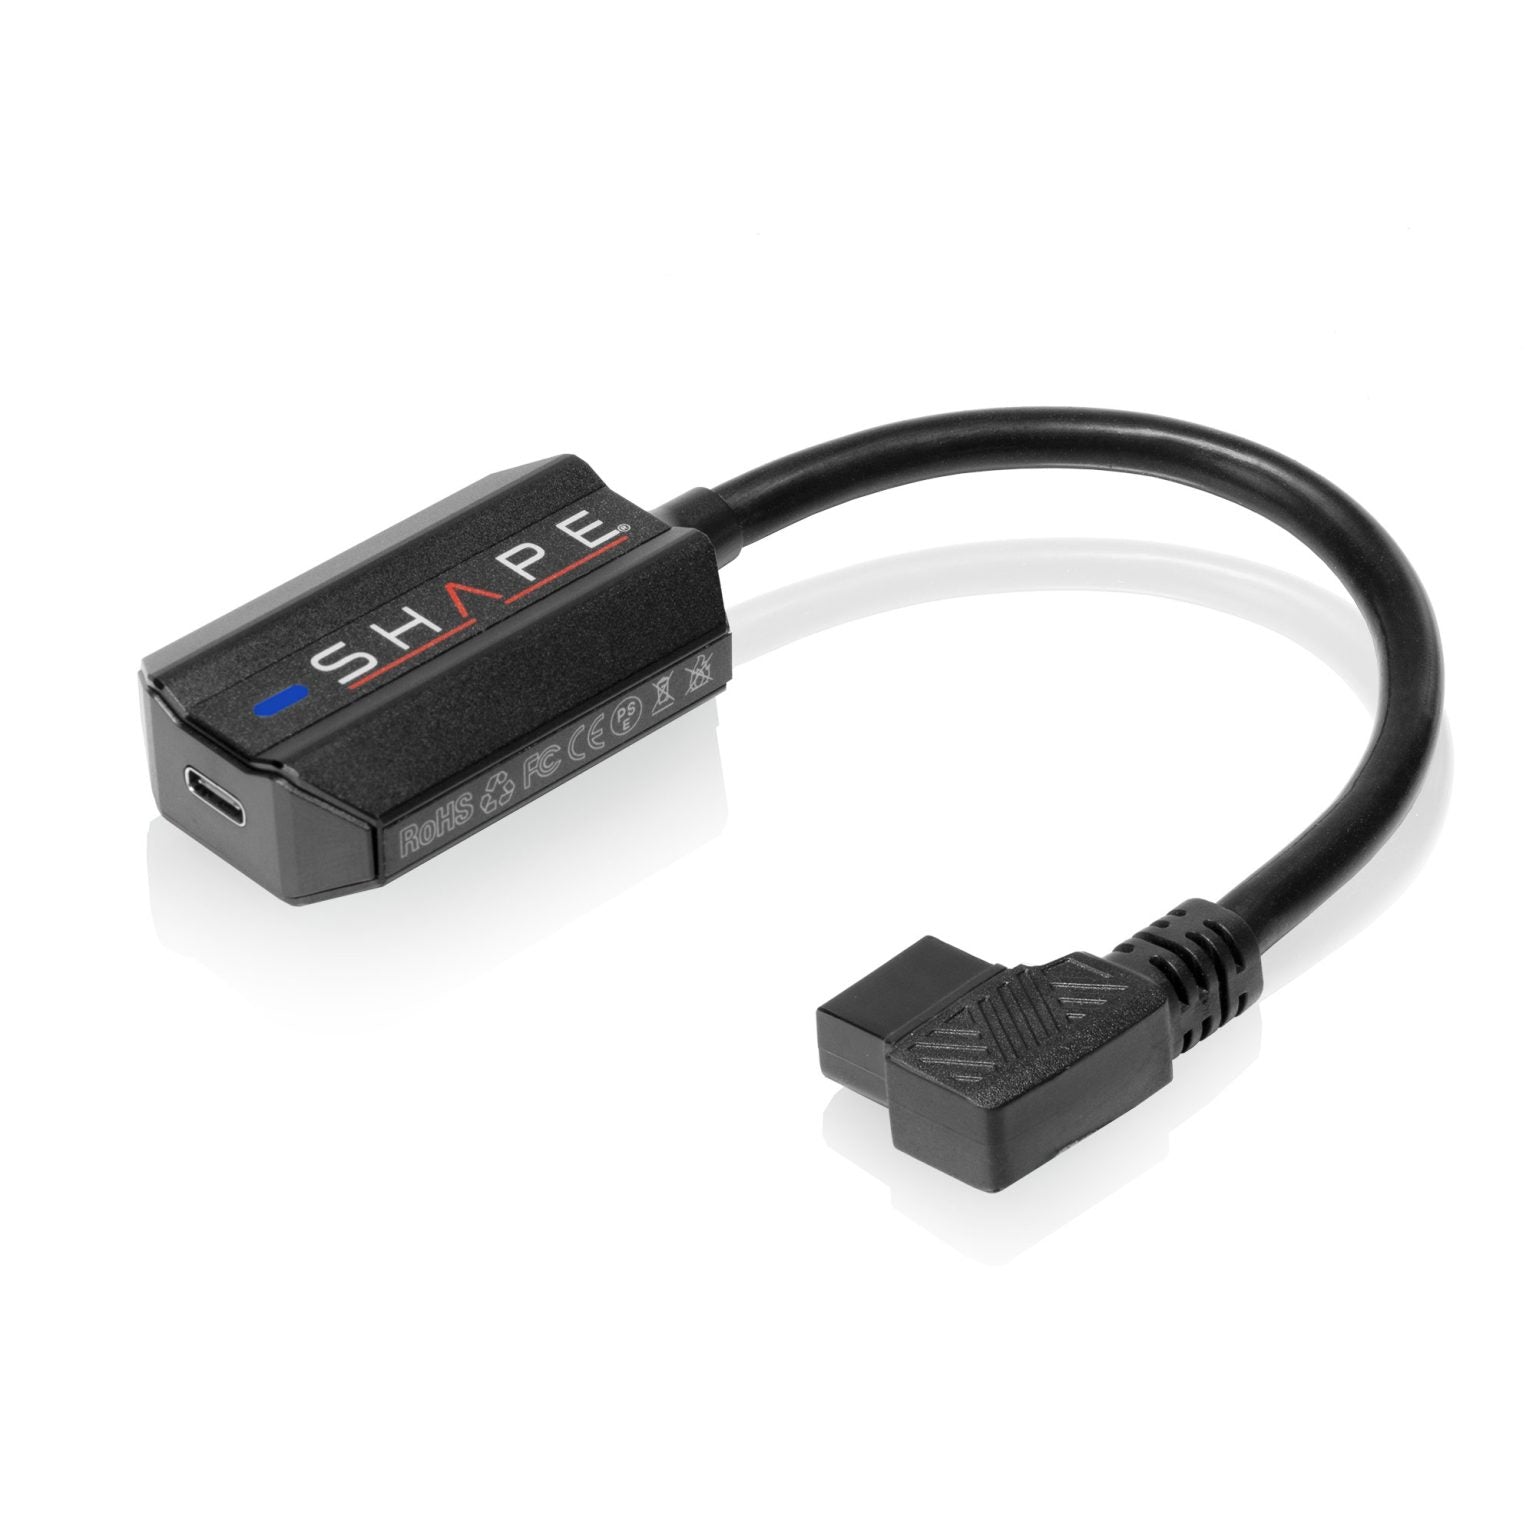 SHAPE Adaptateur de charge bidirectionnel D-Tap vers USB-C 100 W